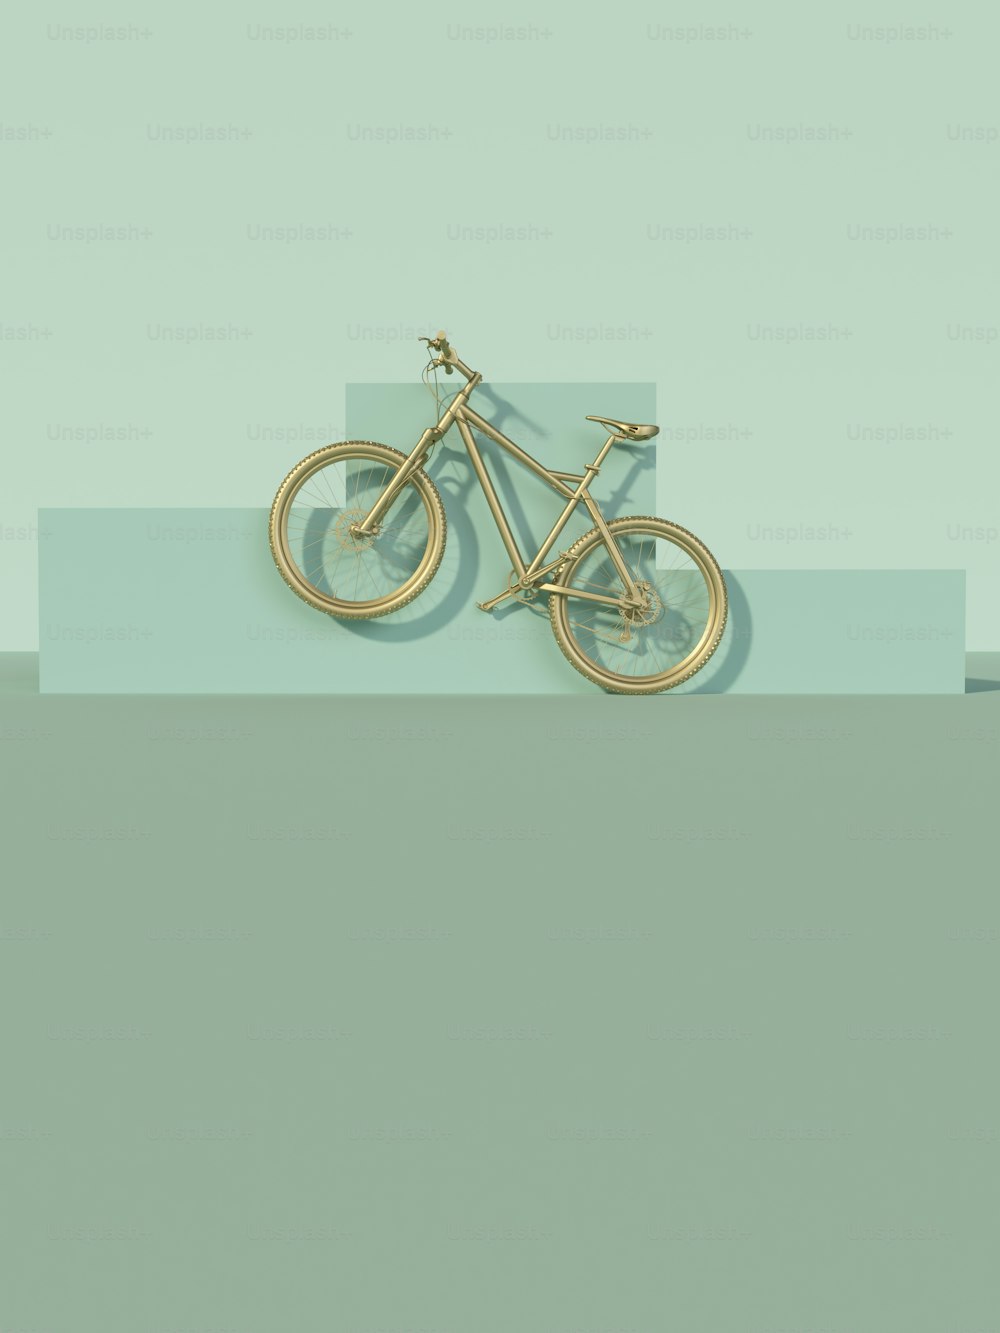 Ein goldenes Fahrrad ist auf blauem und grünem Hintergrund abgebildet